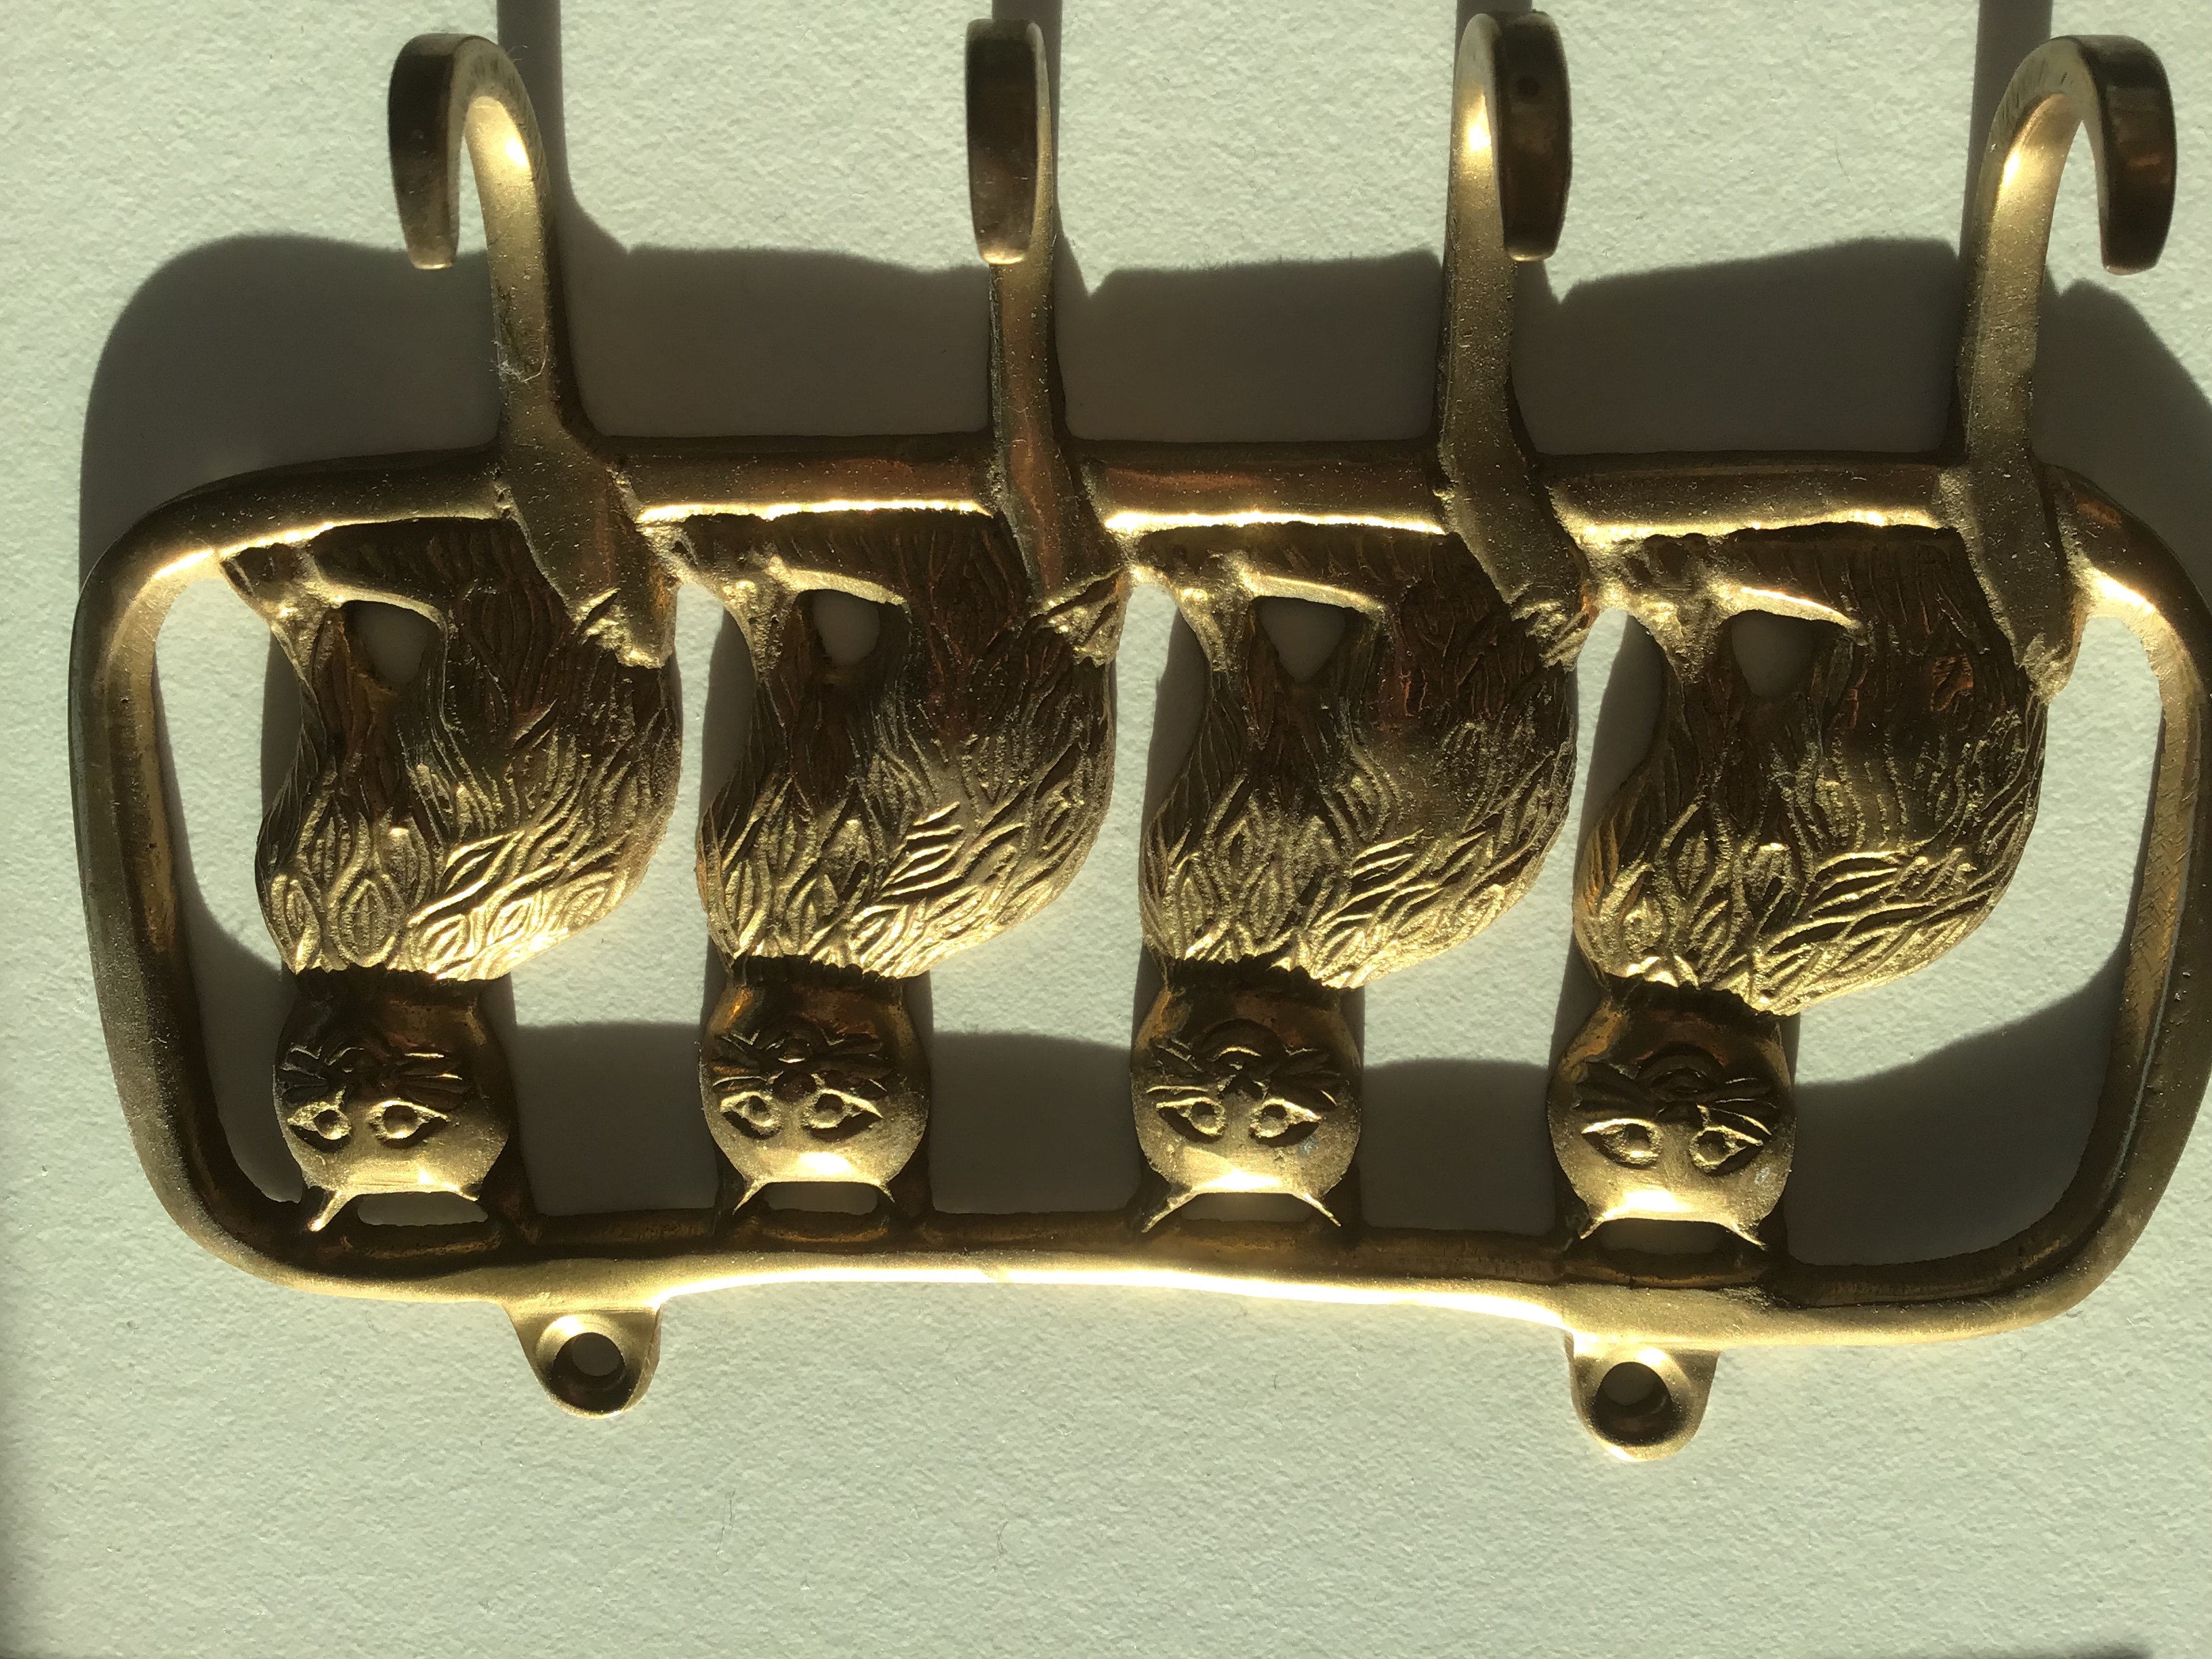 Porte-clefs  mural métallique motif chats